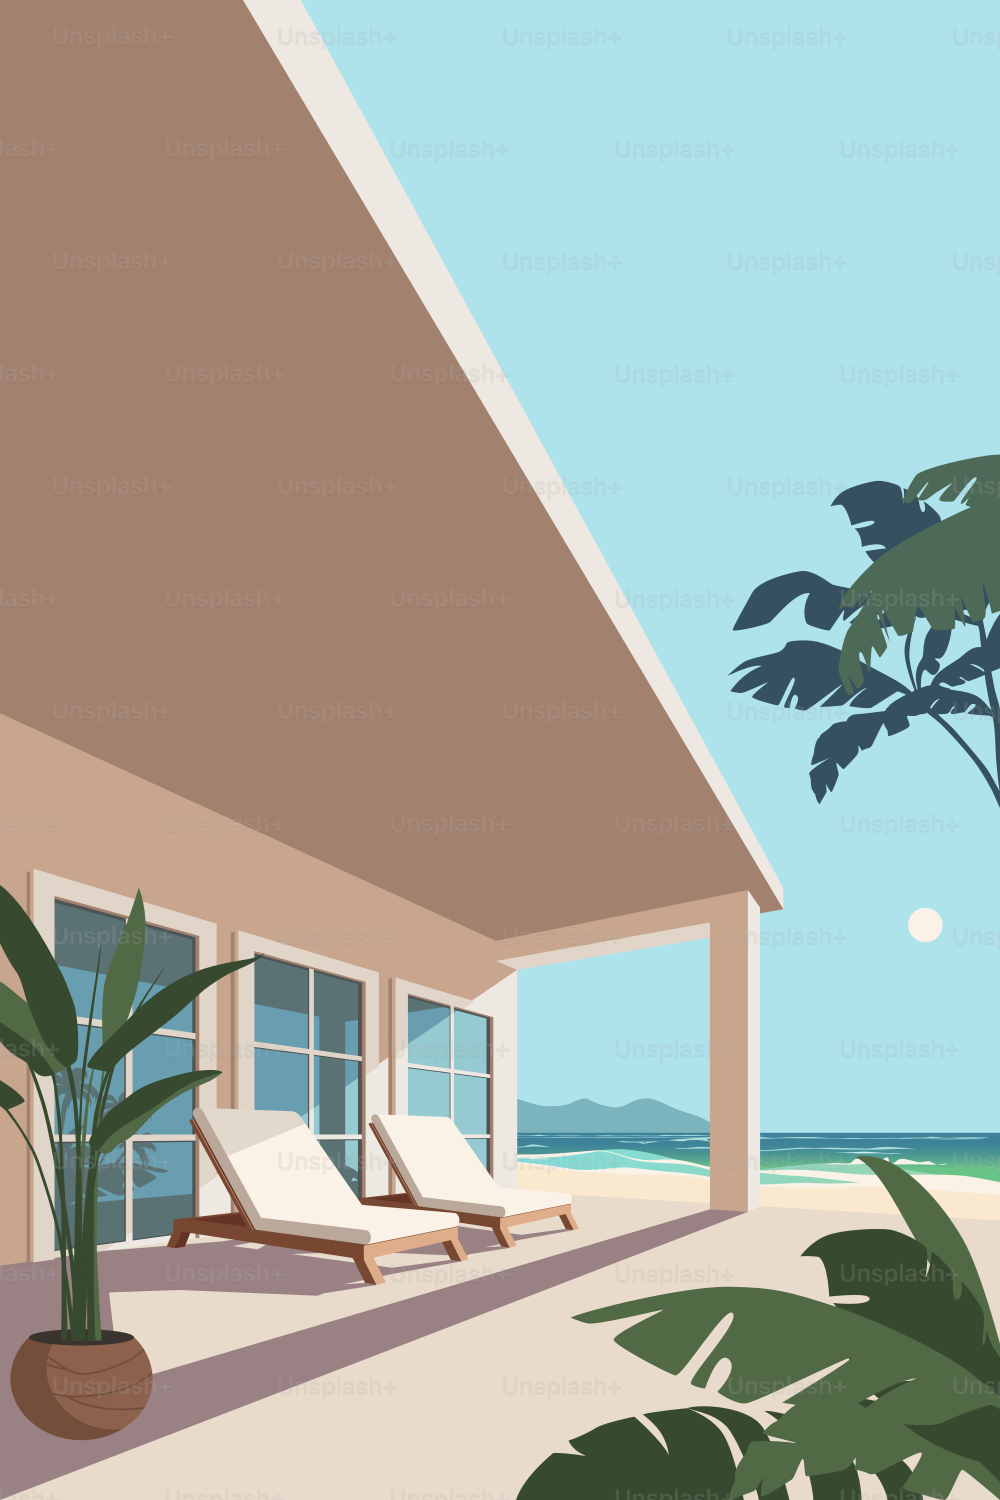 Dos cómodas tumbonas en la terraza junto al mar. Villa a la orilla del mar. Palmeras y playa de arena bajo los rayos del sol tropical. Complejo turístico para tomar un descanso.